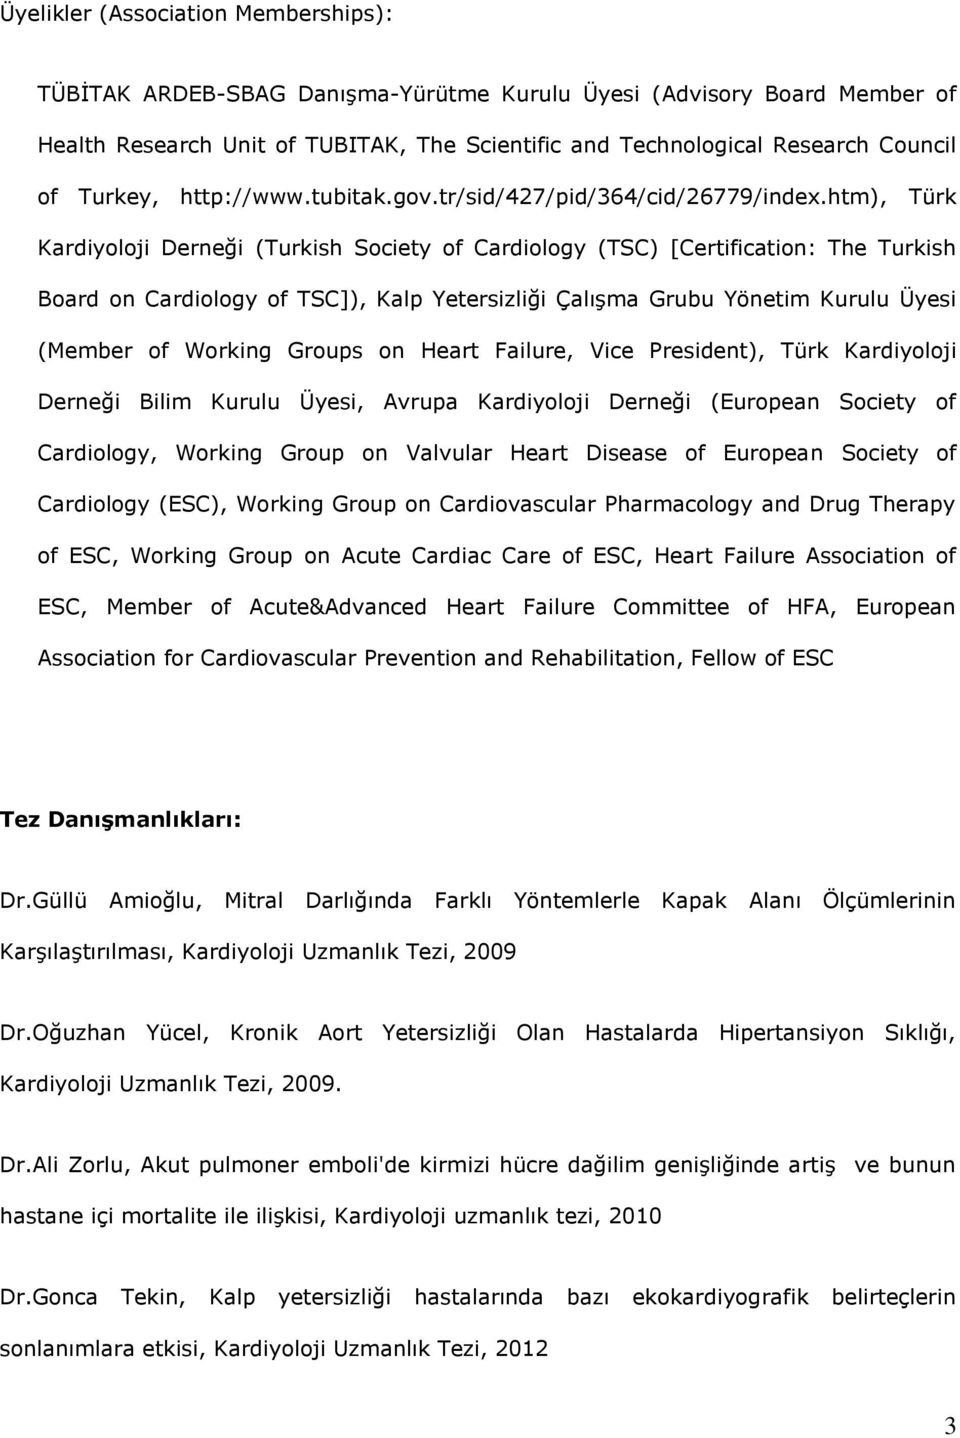 htm), Türk Kardiyoloji Derneği (Turkish Society of Cardiology (TSC) [Certification: The Turkish Board on Cardiology of TSC]), Kalp Yetersizliği Çalışma Grubu Yönetim Kurulu Üyesi (Member of Working